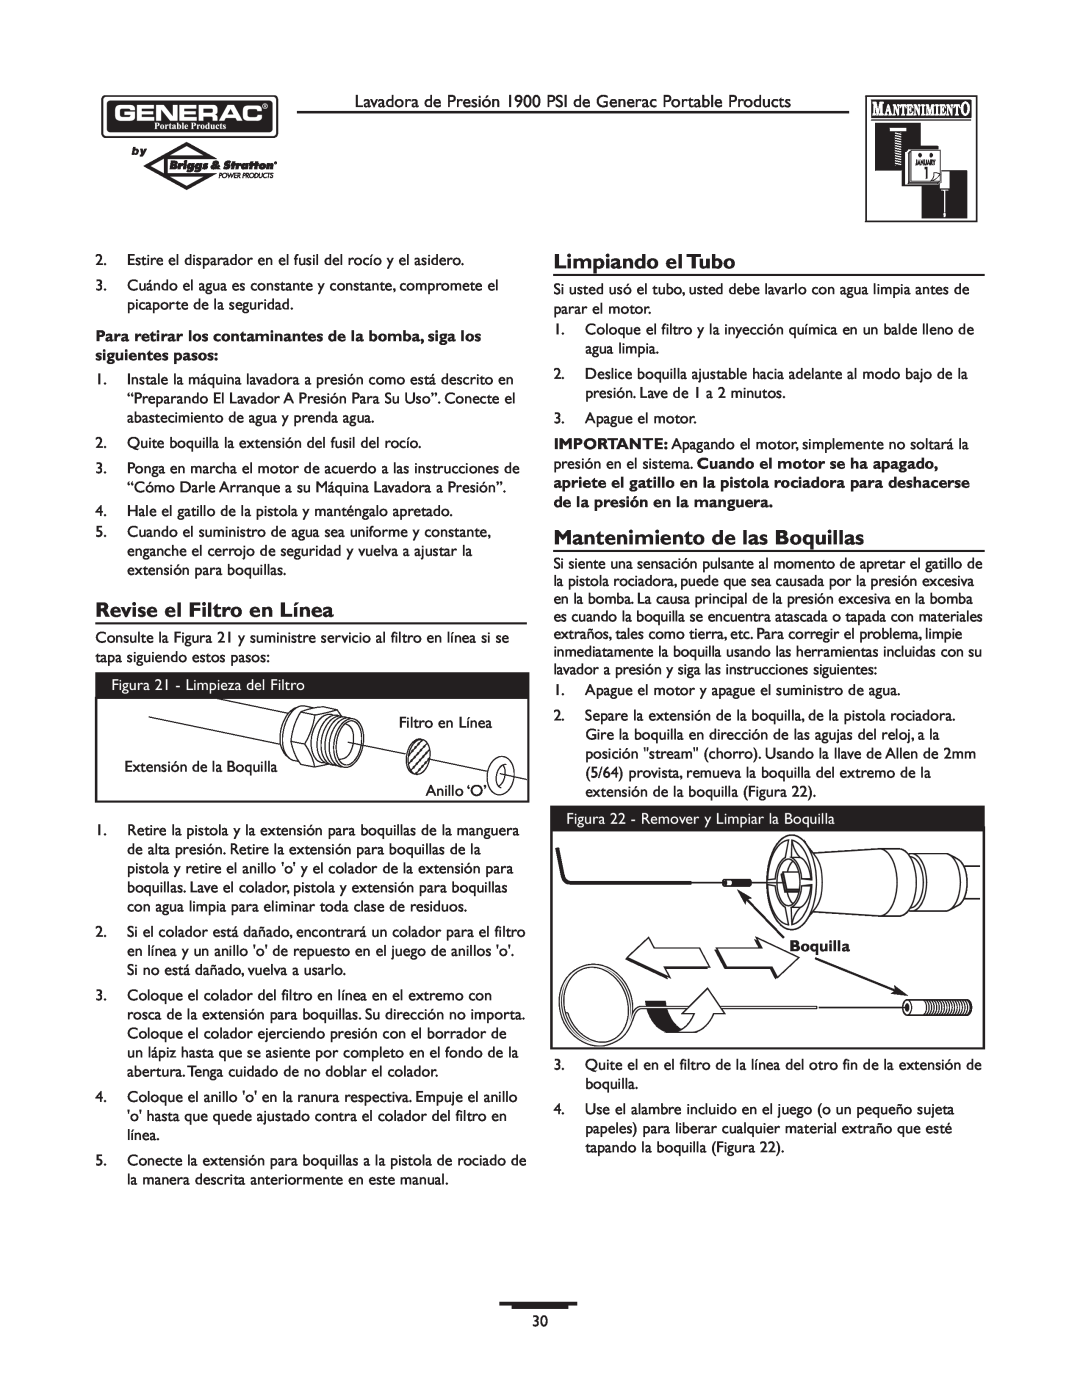 Briggs & Stratton 1900PSI owner manual Revise el Filtro en Línea, Limpiando el Tubo, Mantenimiento de las Boquillas 